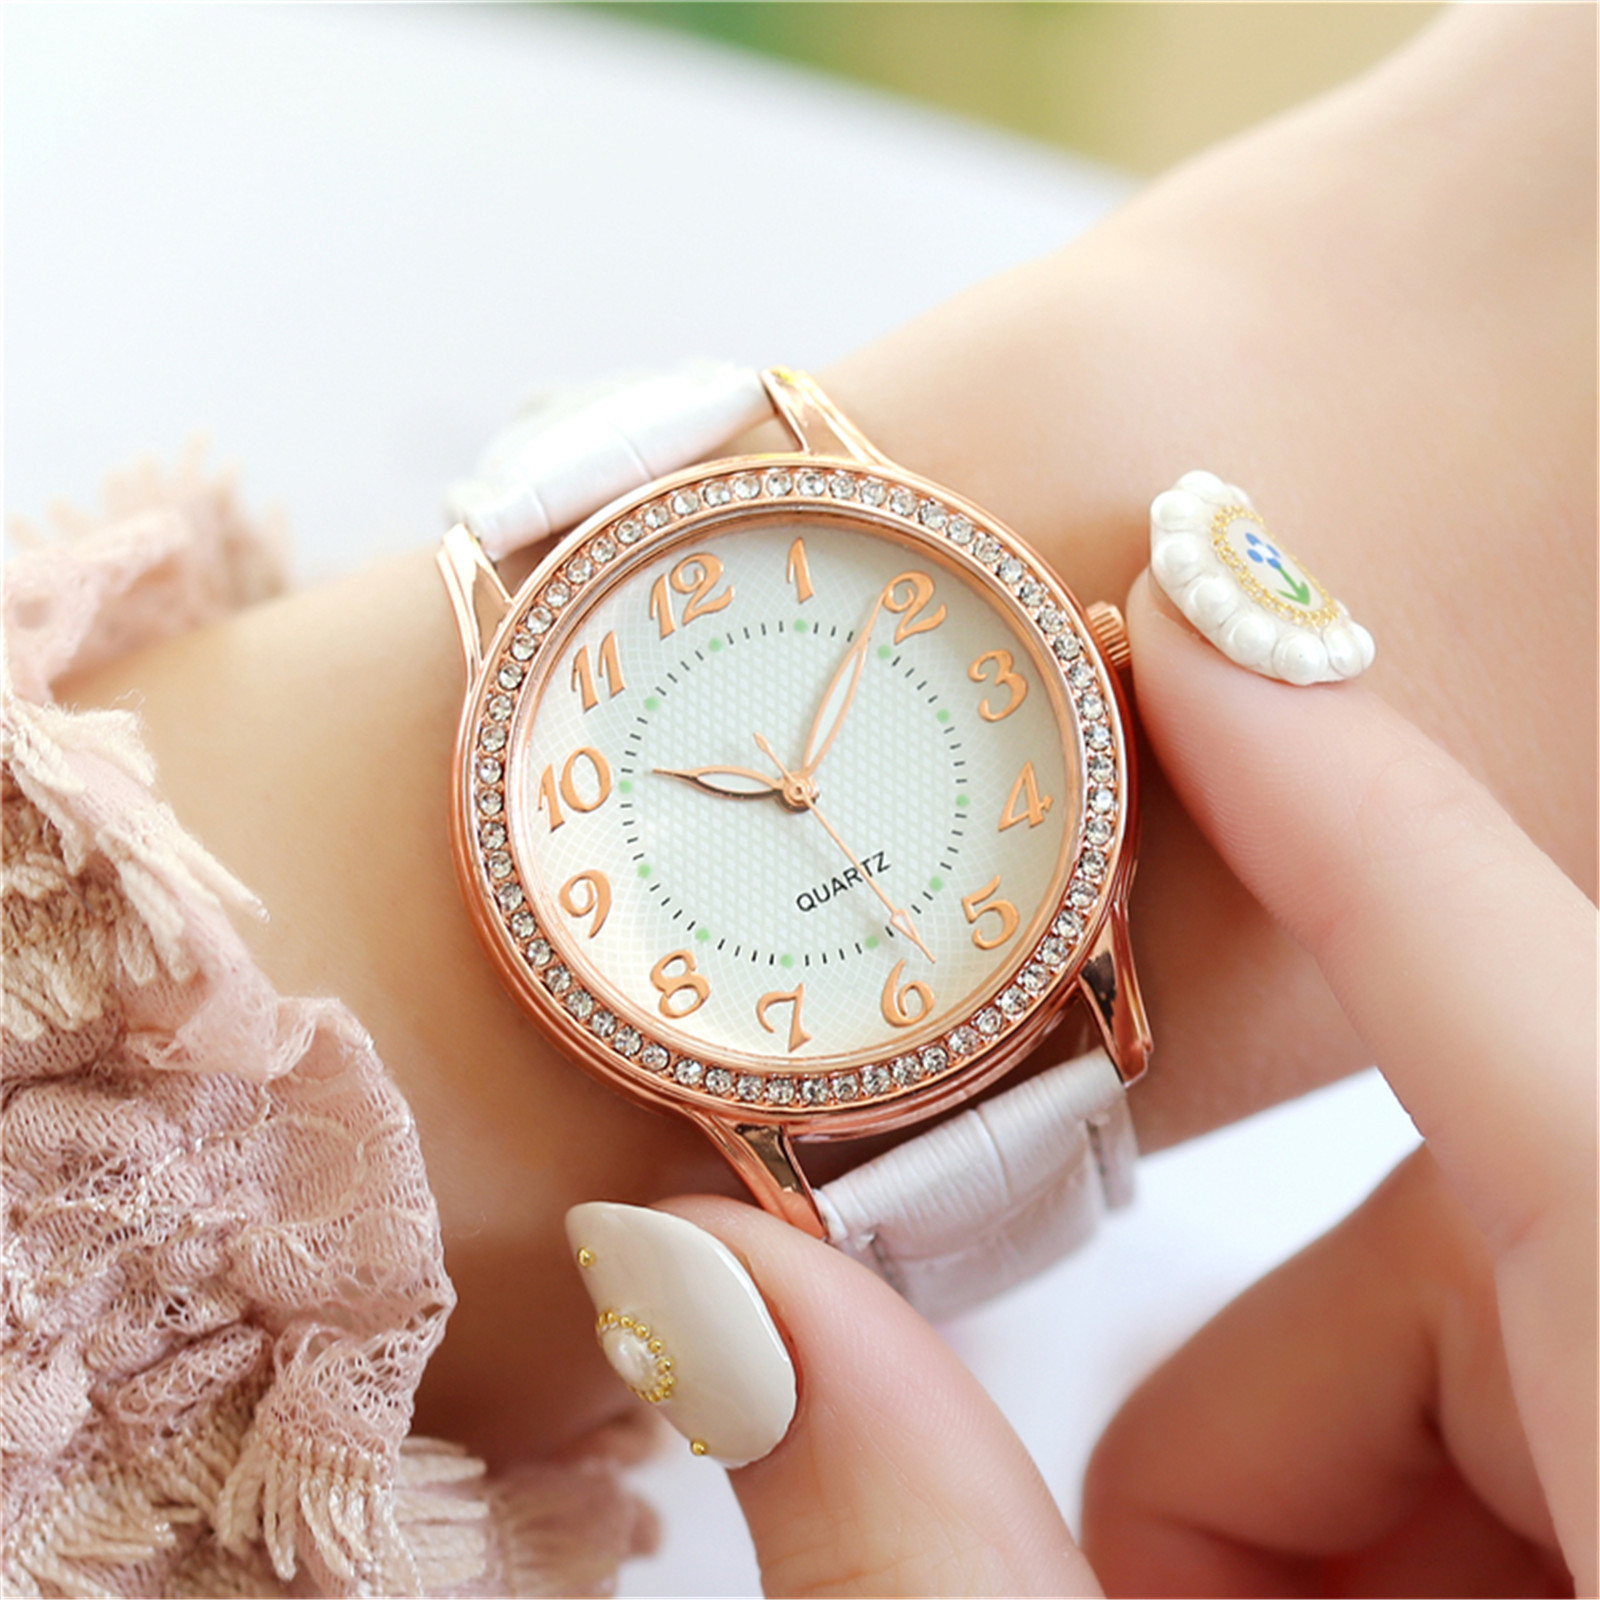 amousa Watch Ladies Diamond Luxury Watch Fashion Belt Watch - image 1 of 2